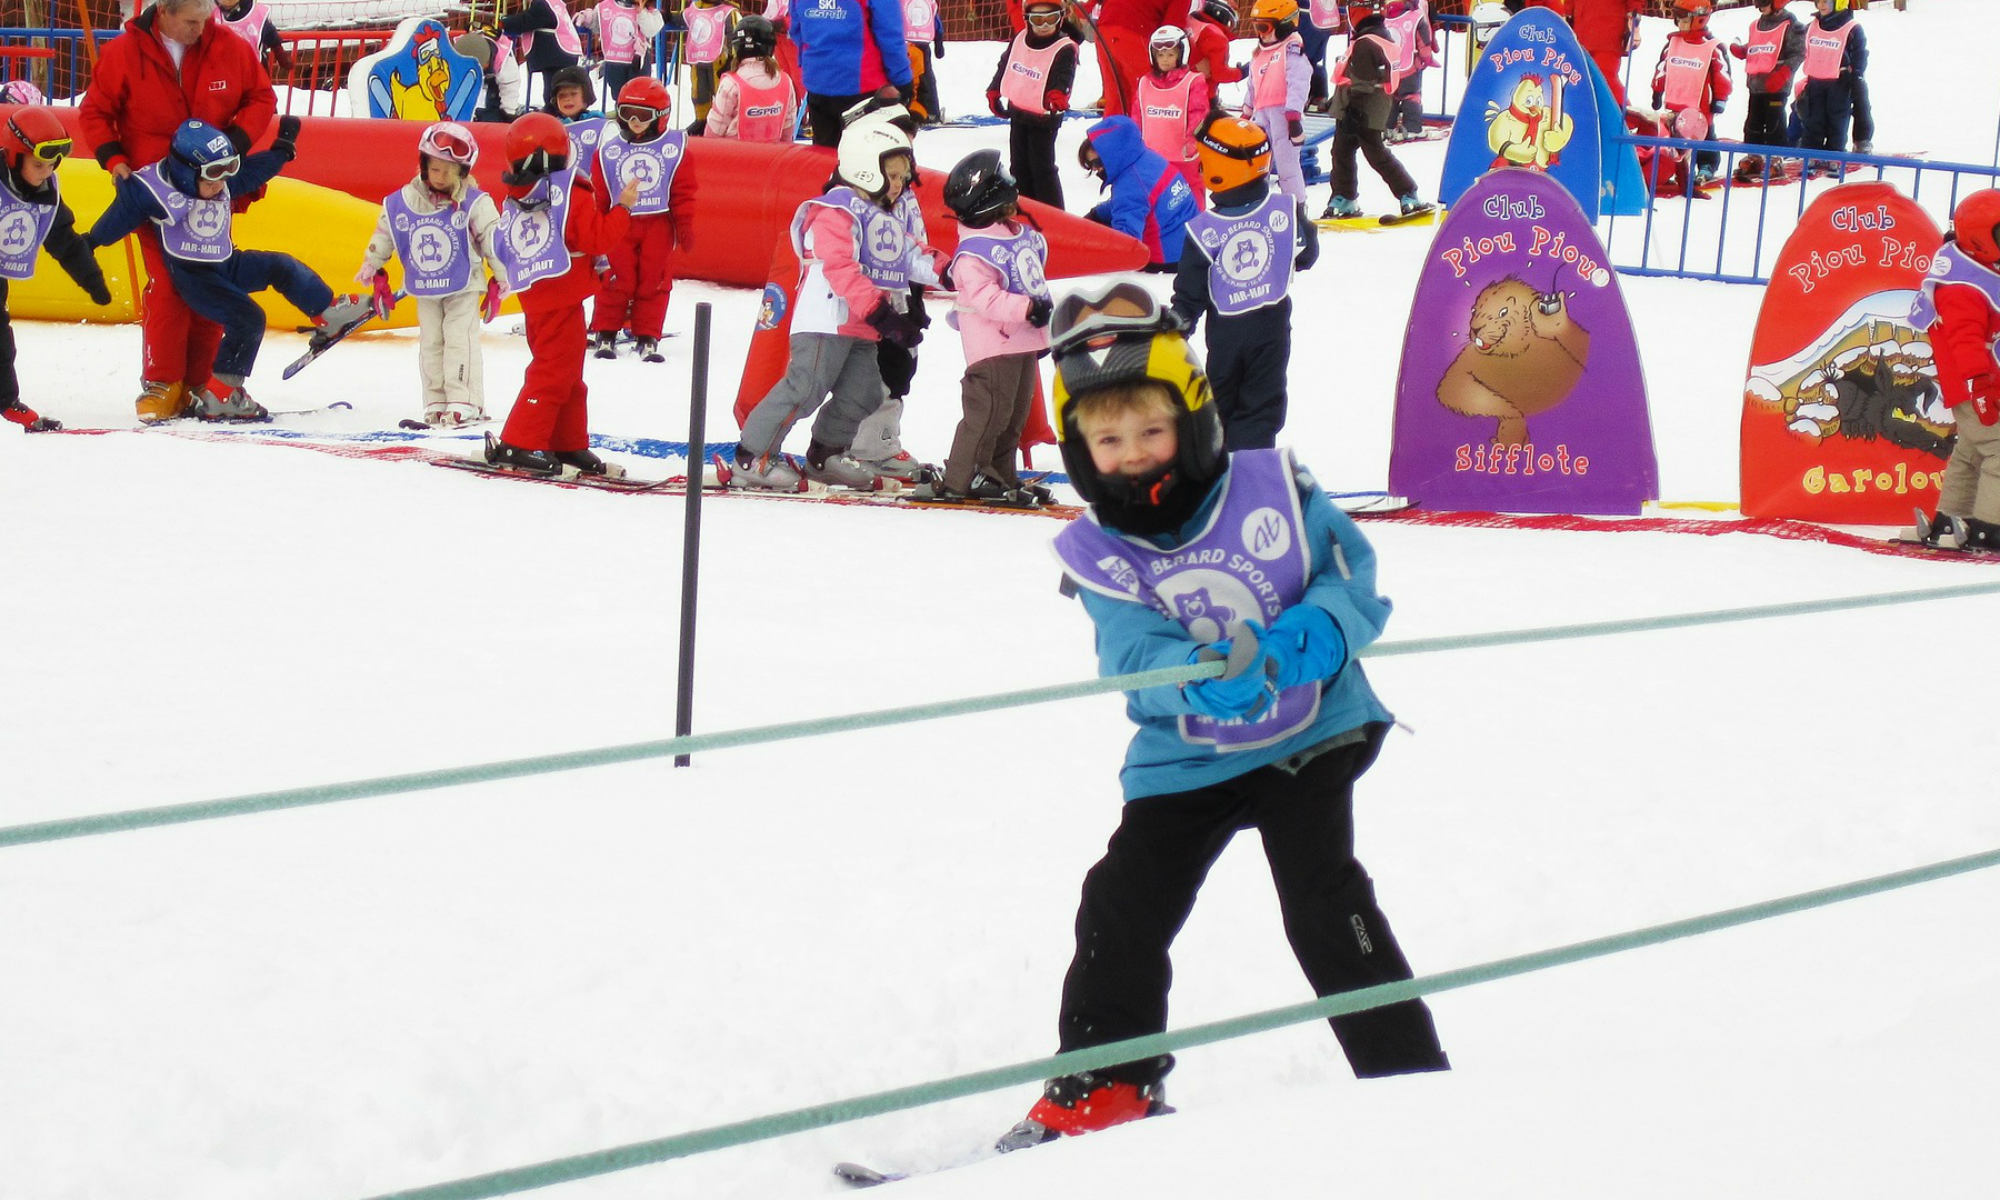 Choisir le bon cours de ski pour mon enfant selon son âge